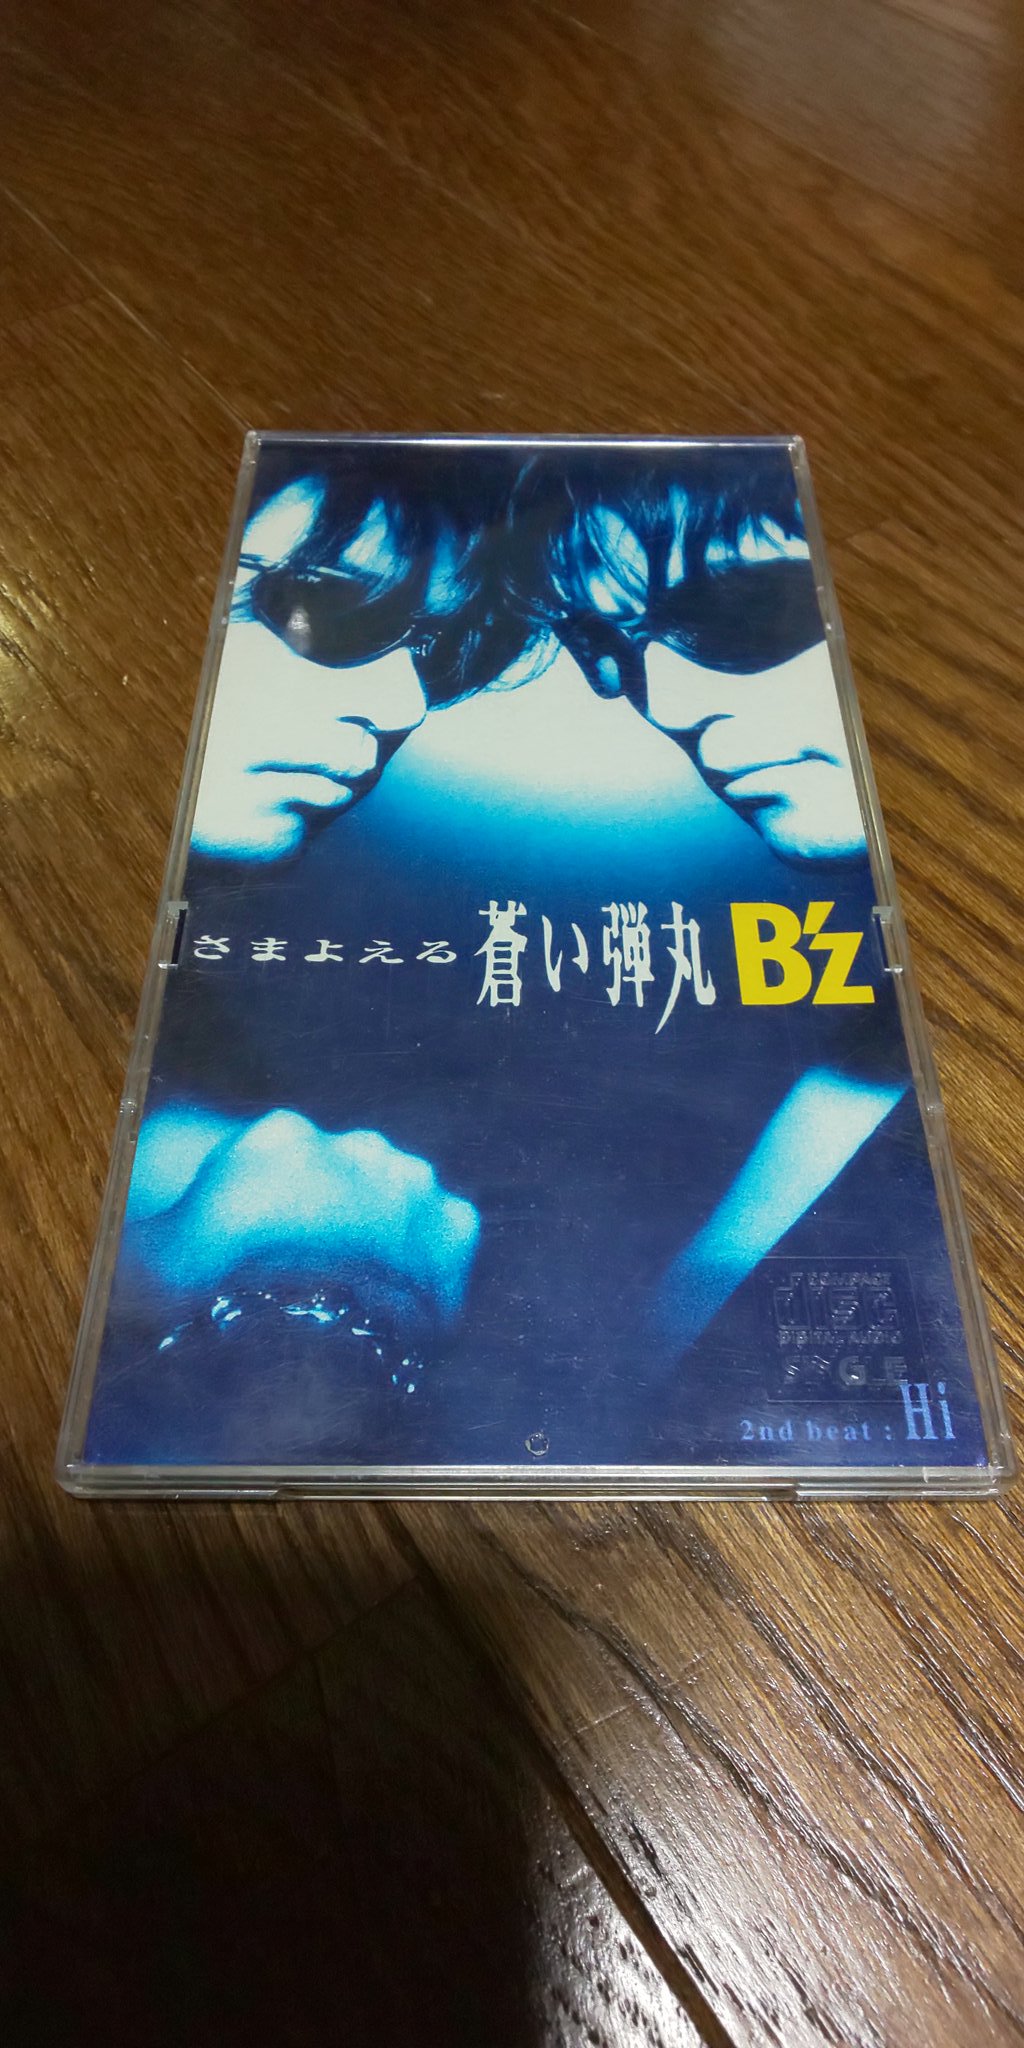 Bar Brotherhood Z B Z 24th Single さまよえる蒼い弾丸 Hi 1998 4 8 Release 英語表記は Wandering Sapphire Bullet である 弾丸は普通 黒 なのに なぜ 蒼い のかと言うと 若い ってこと 未熟 で さまよっている という意味 Hi